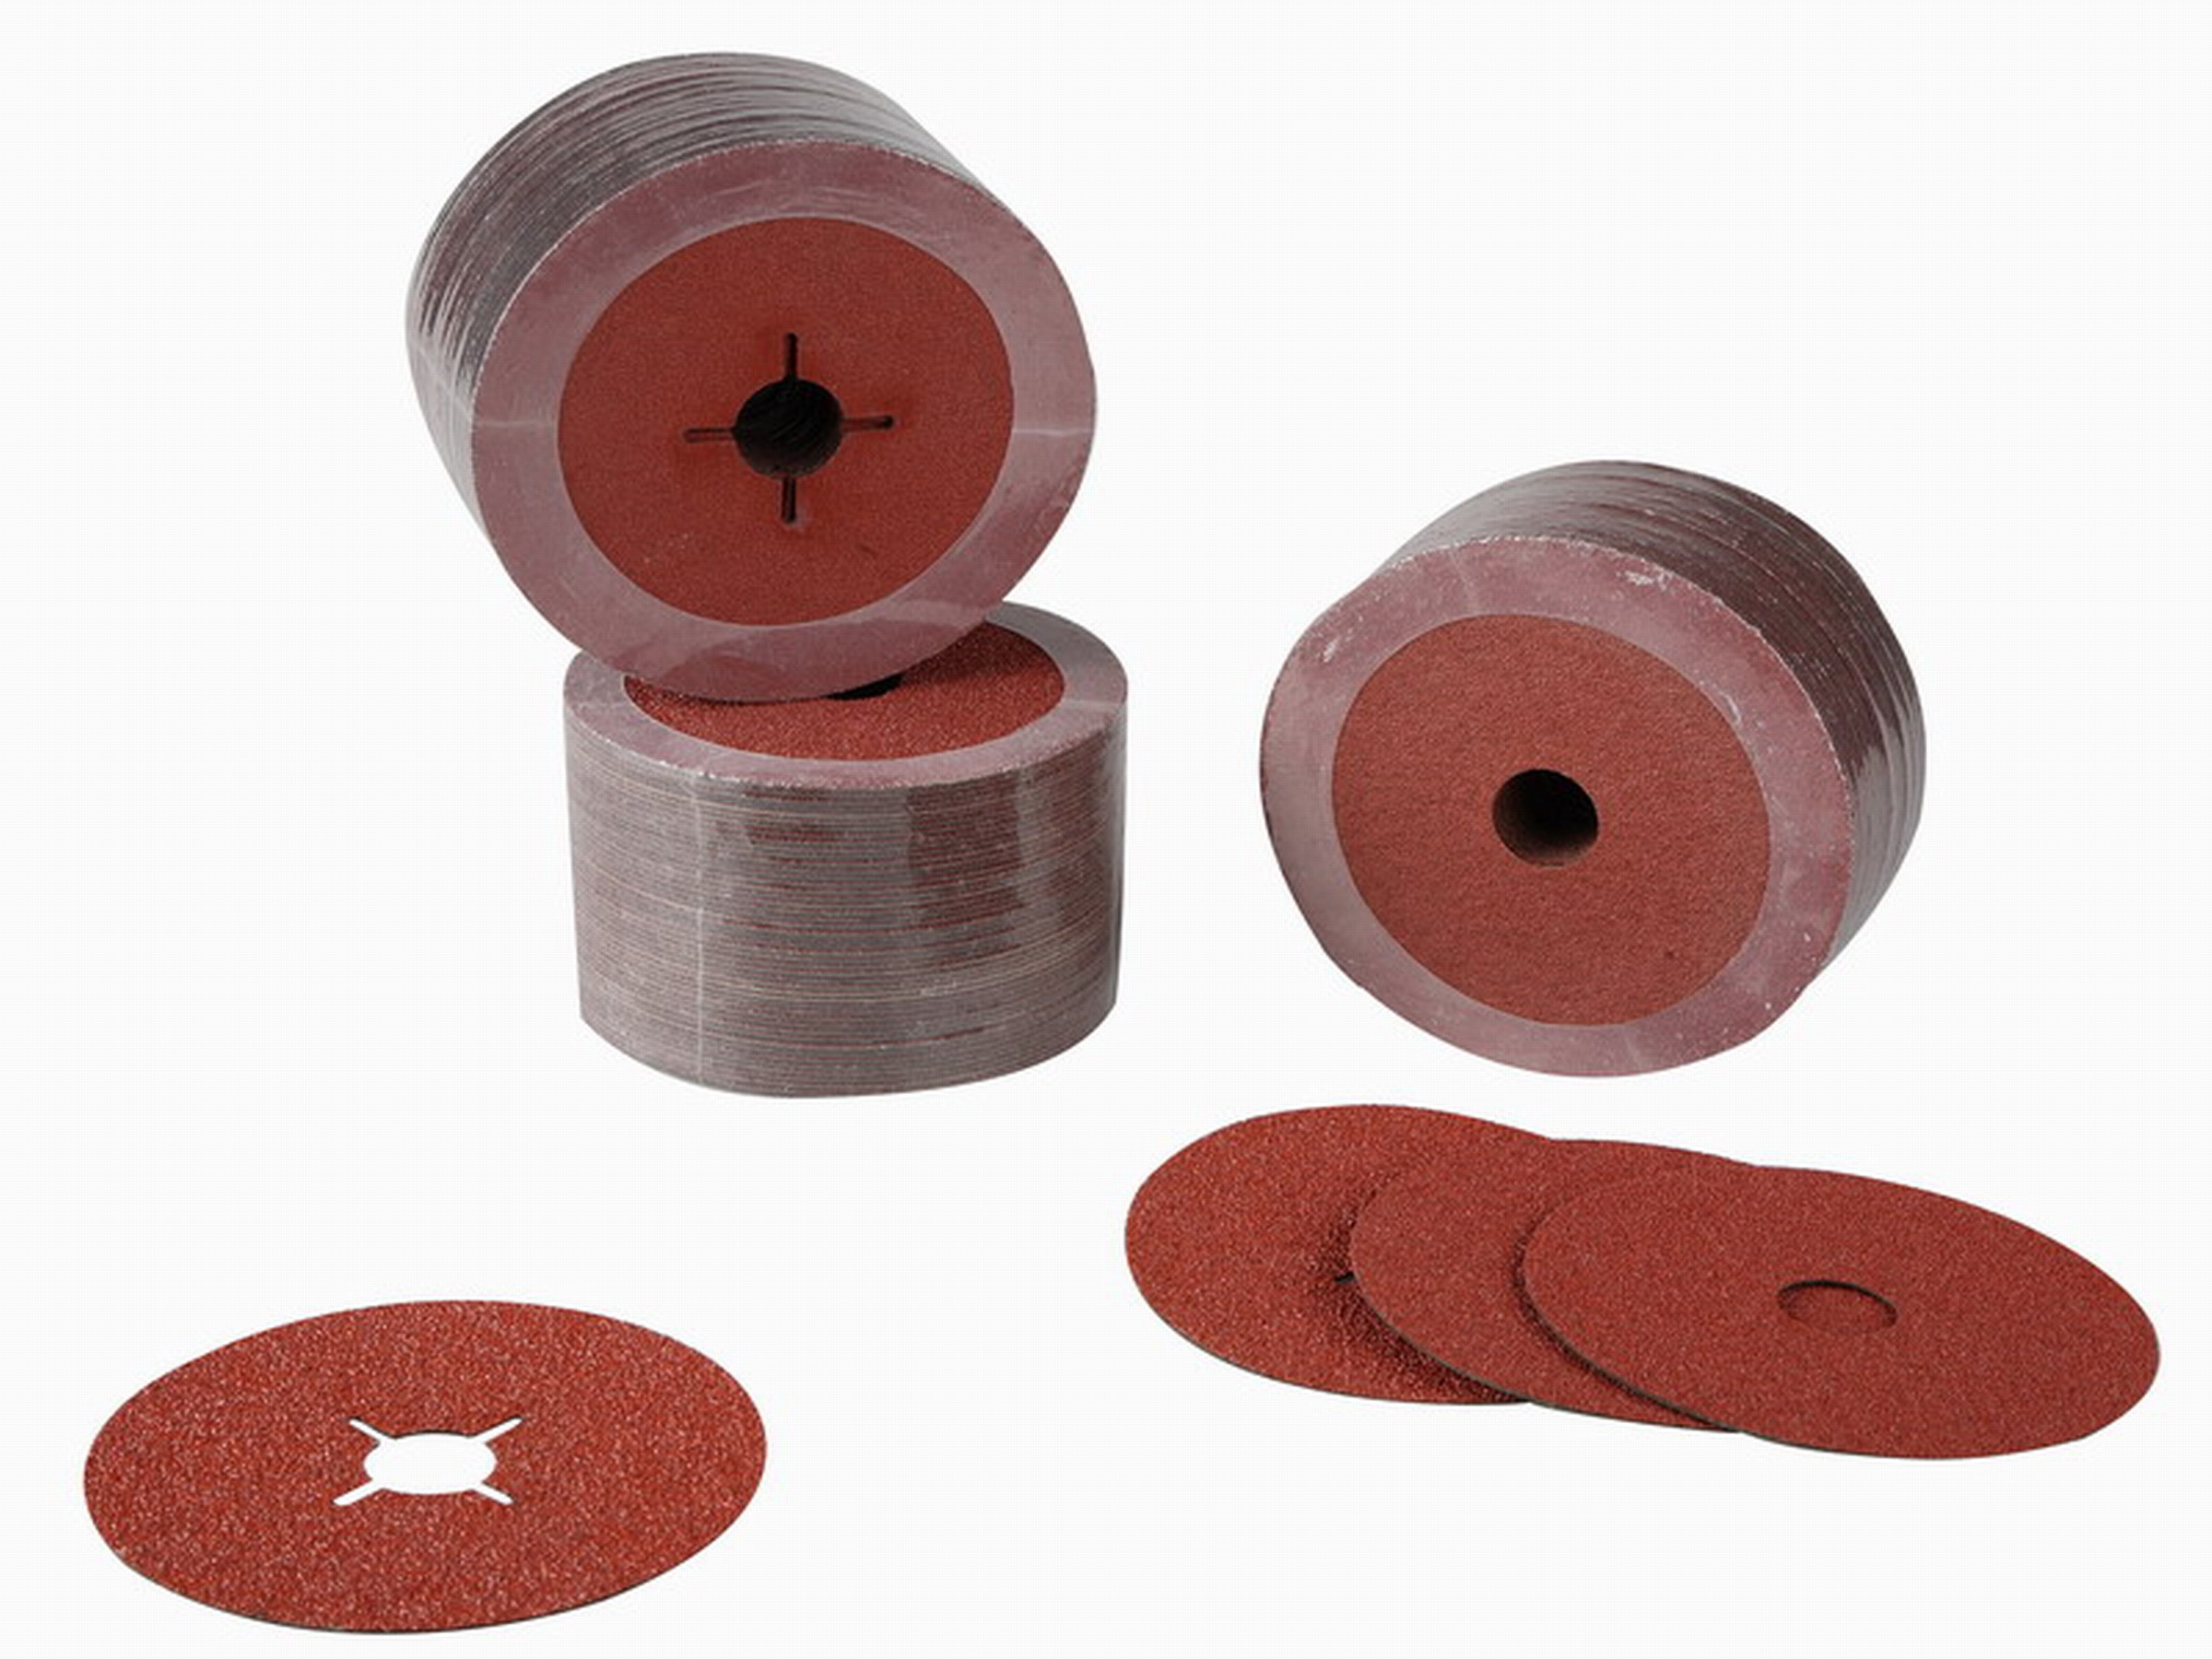 Discos que enarenan de la fibra de la resina del metal para la amoladora